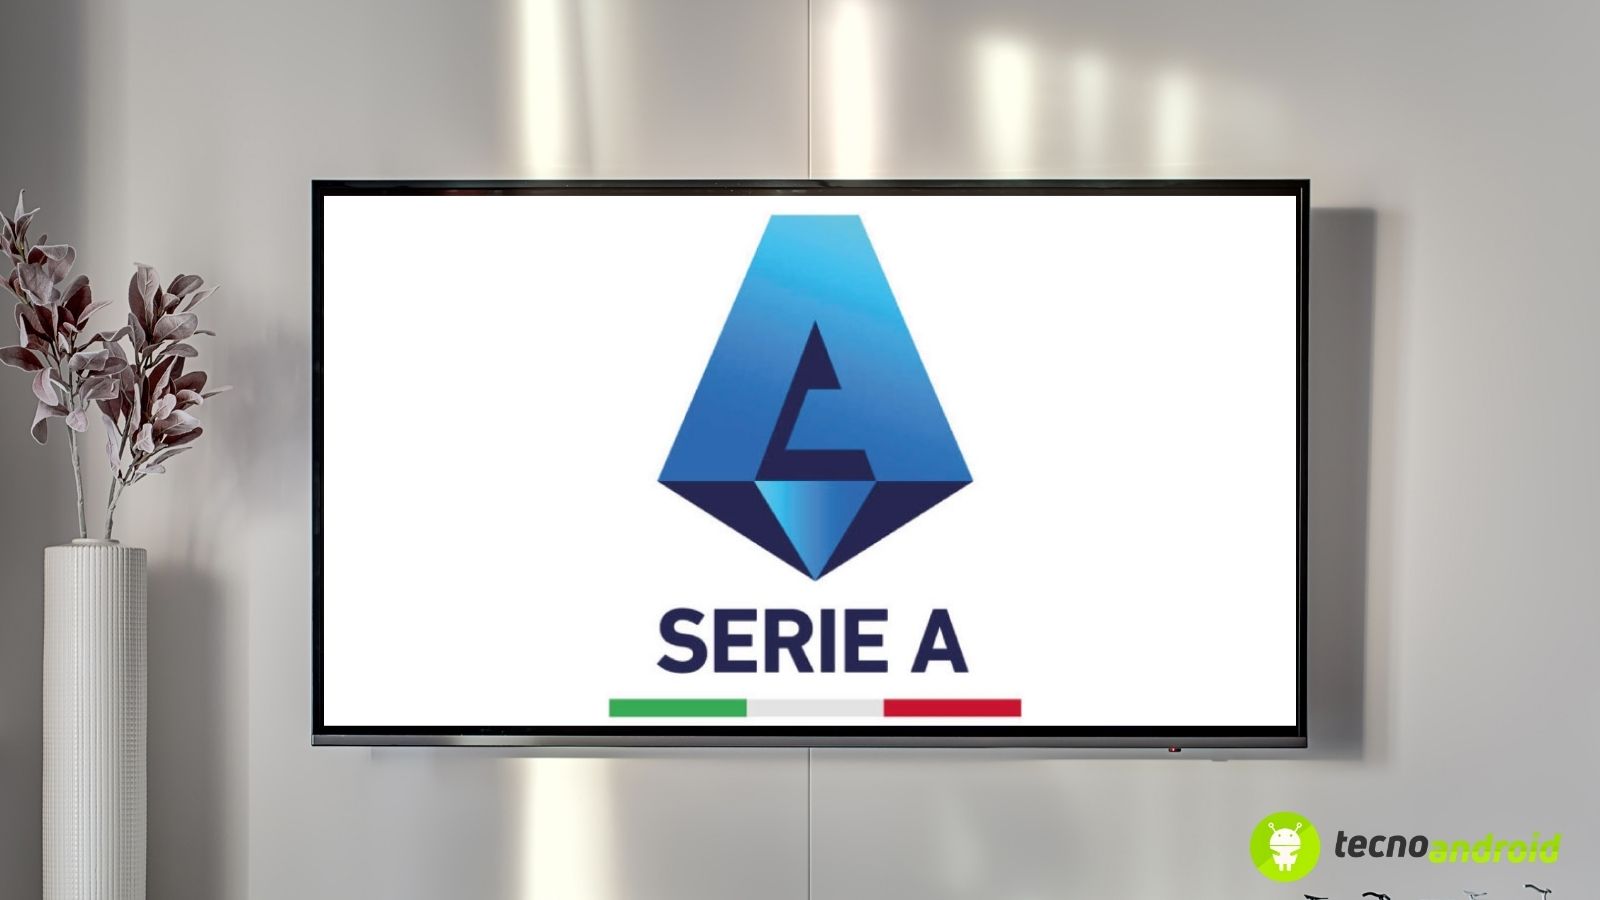 Canale ufficiale Lega Serie A